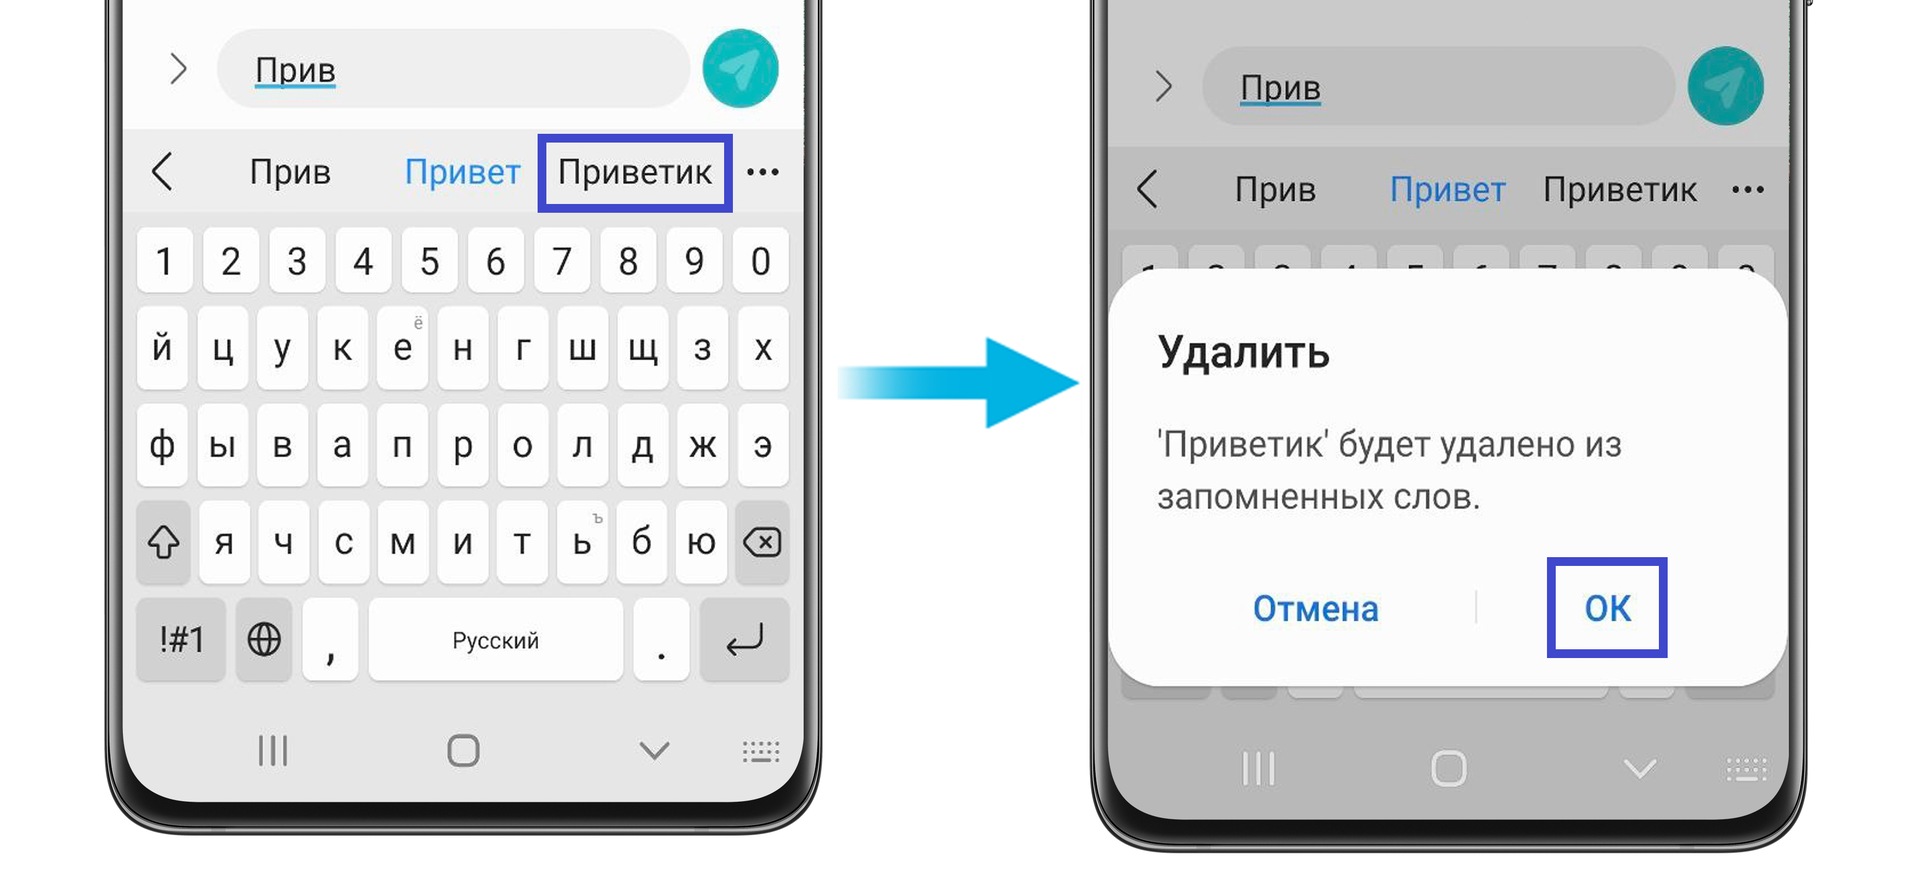 Как перевести телеграмм на русский язык на самсунге фото 38